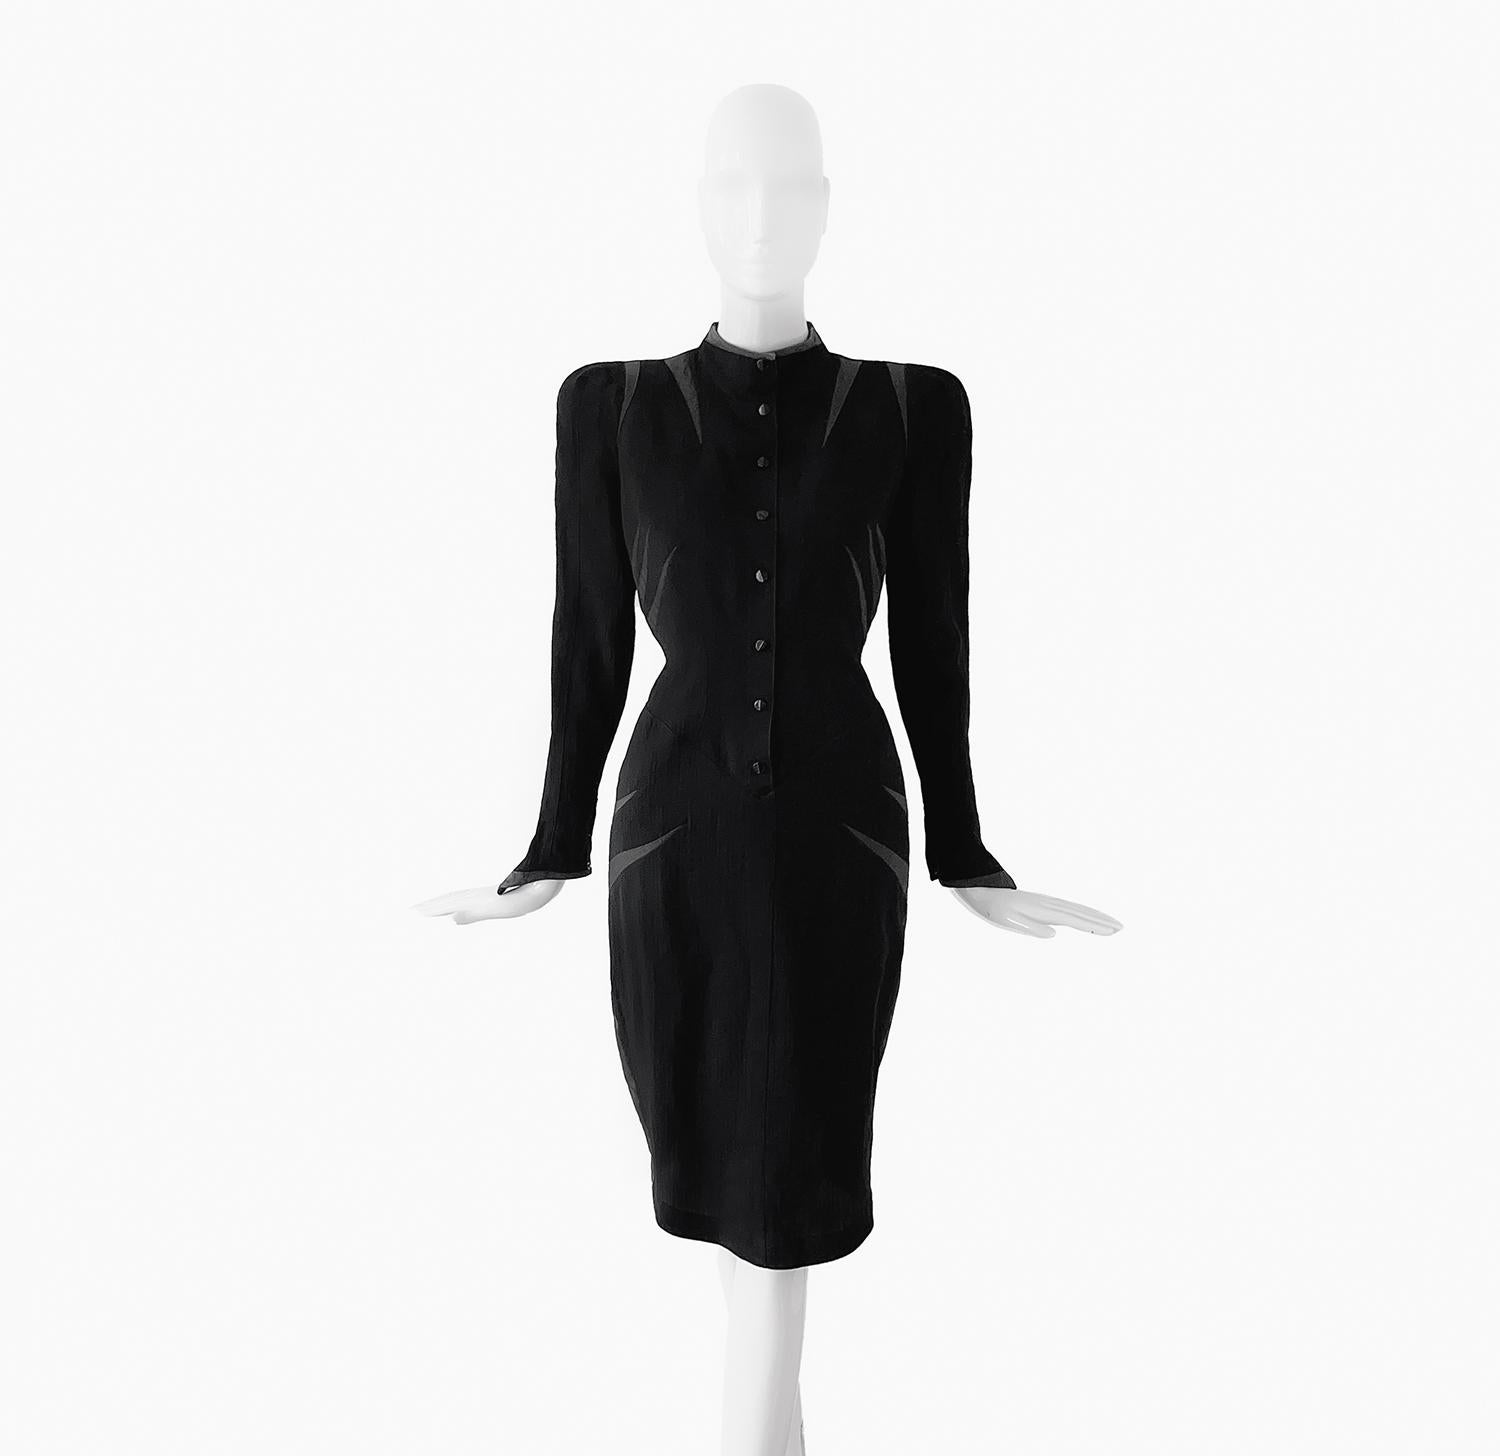 
Wunderschönes, extrem seltenes Kleid von Thierry Mugler, Spring Summer 1988 Collection'S. Dramatisches, skulpturales Femme Fatale Kleid mit starken Schultern, hohem Ausschnitt und Seidenstreifen-Details. Eine sehr seltene Kreation aus den frühen